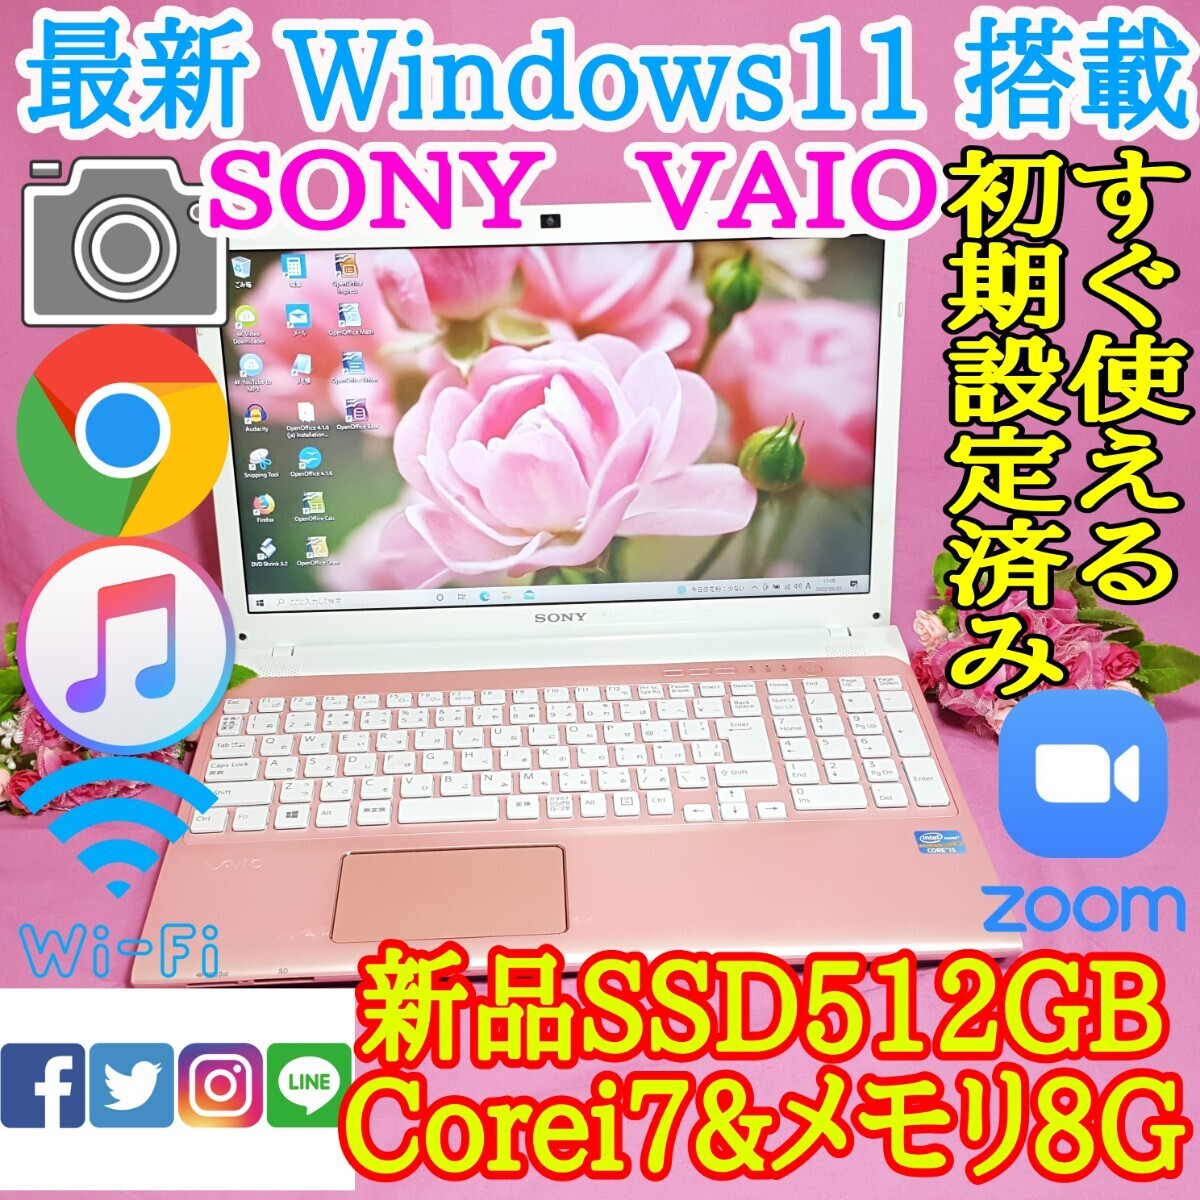 極上品/SONY/VAIO/ピンク色/最新Windows11/新品爆速SSD512GB/3世代i7/メモリ8GB/USB3.0/HDMI/LINE/iTunes/Office/Wi-Fi/便利なソフト多数!!